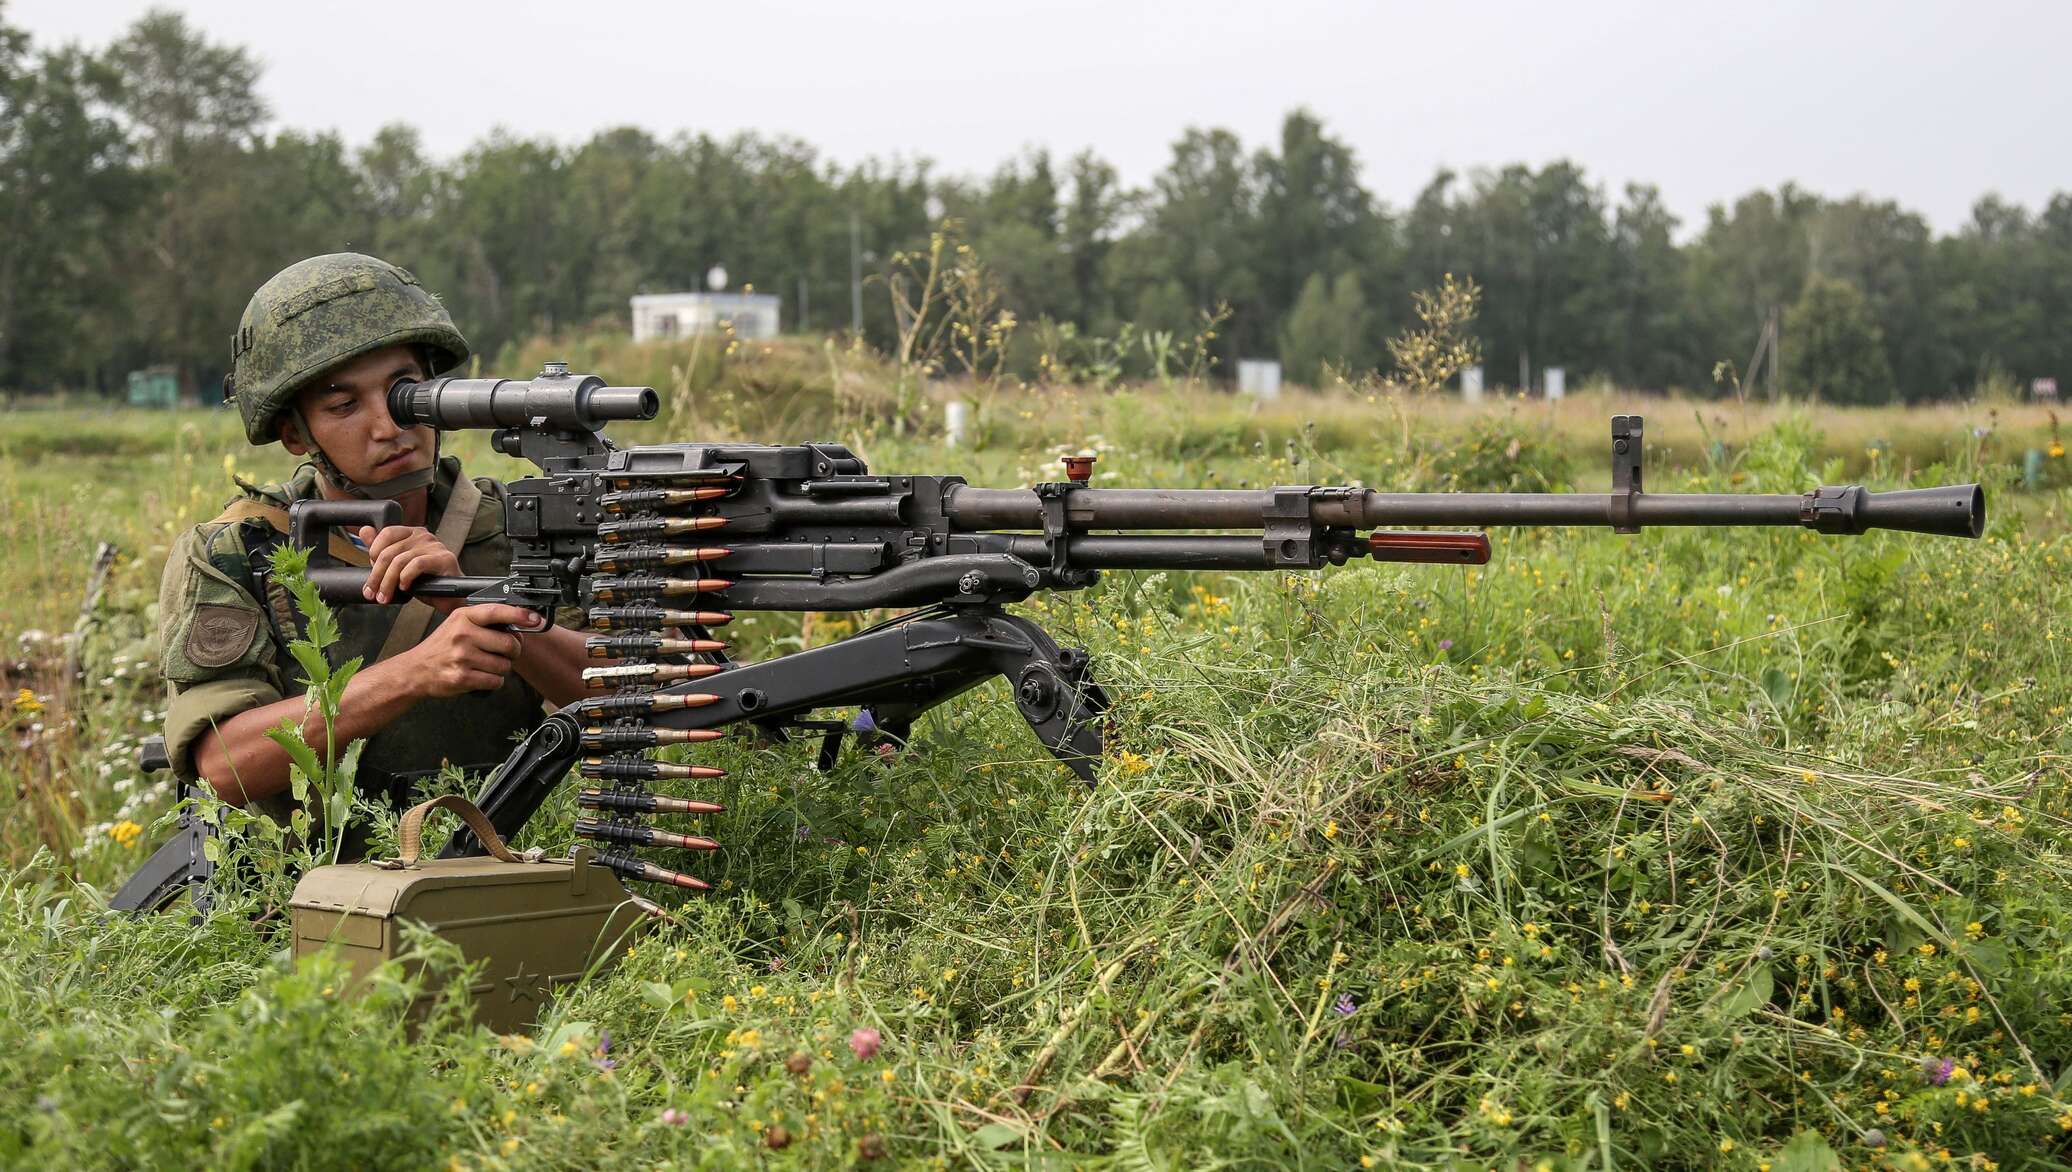 Пулеметы россии на вооружении фото